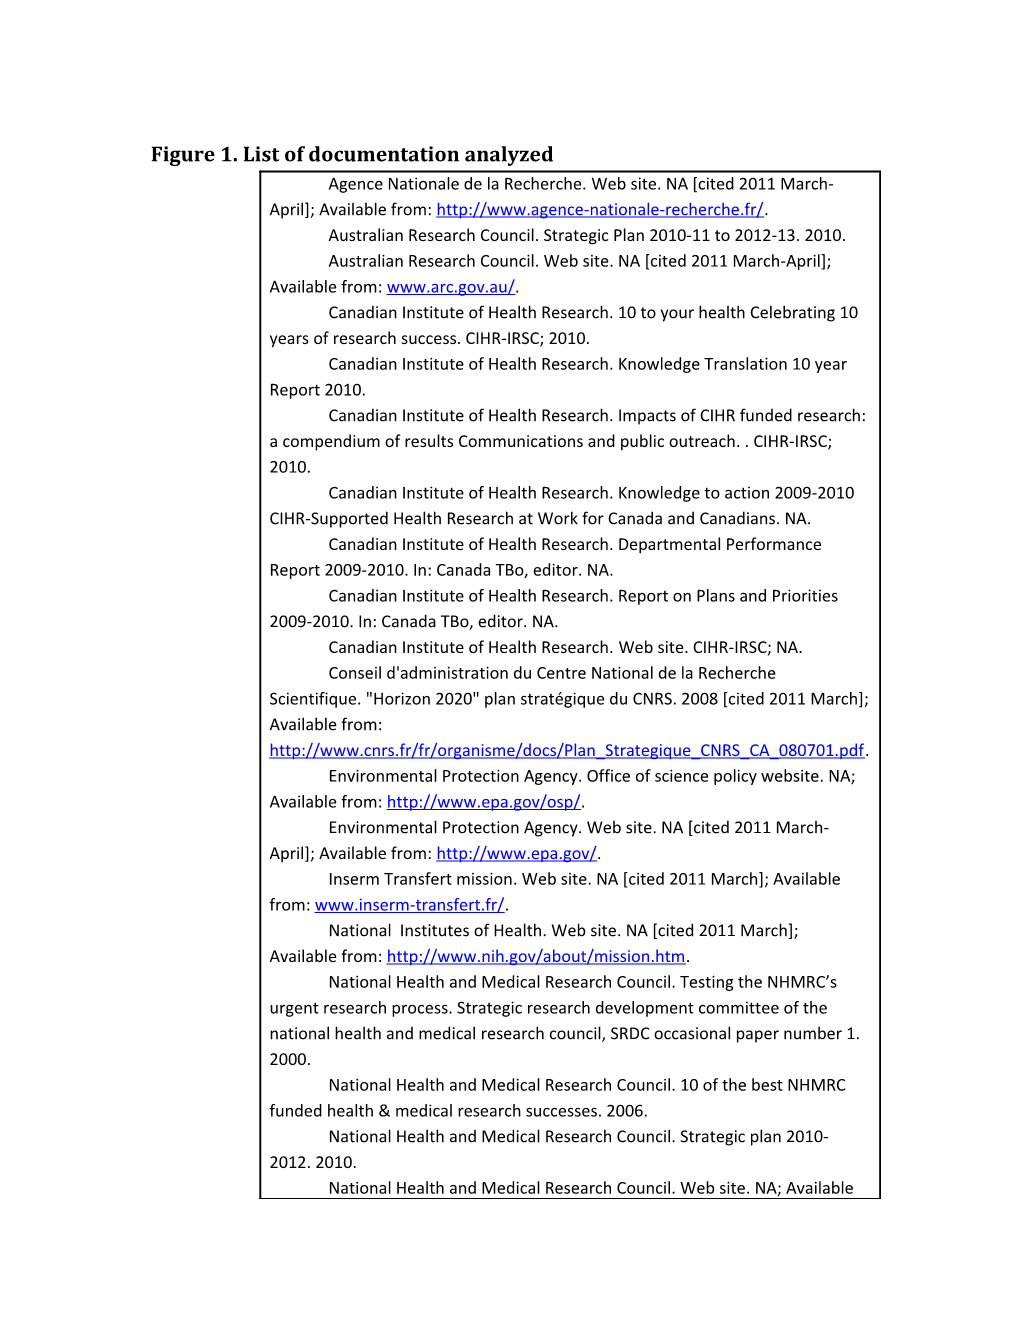 Figure 1. List of Documentation Analyzed